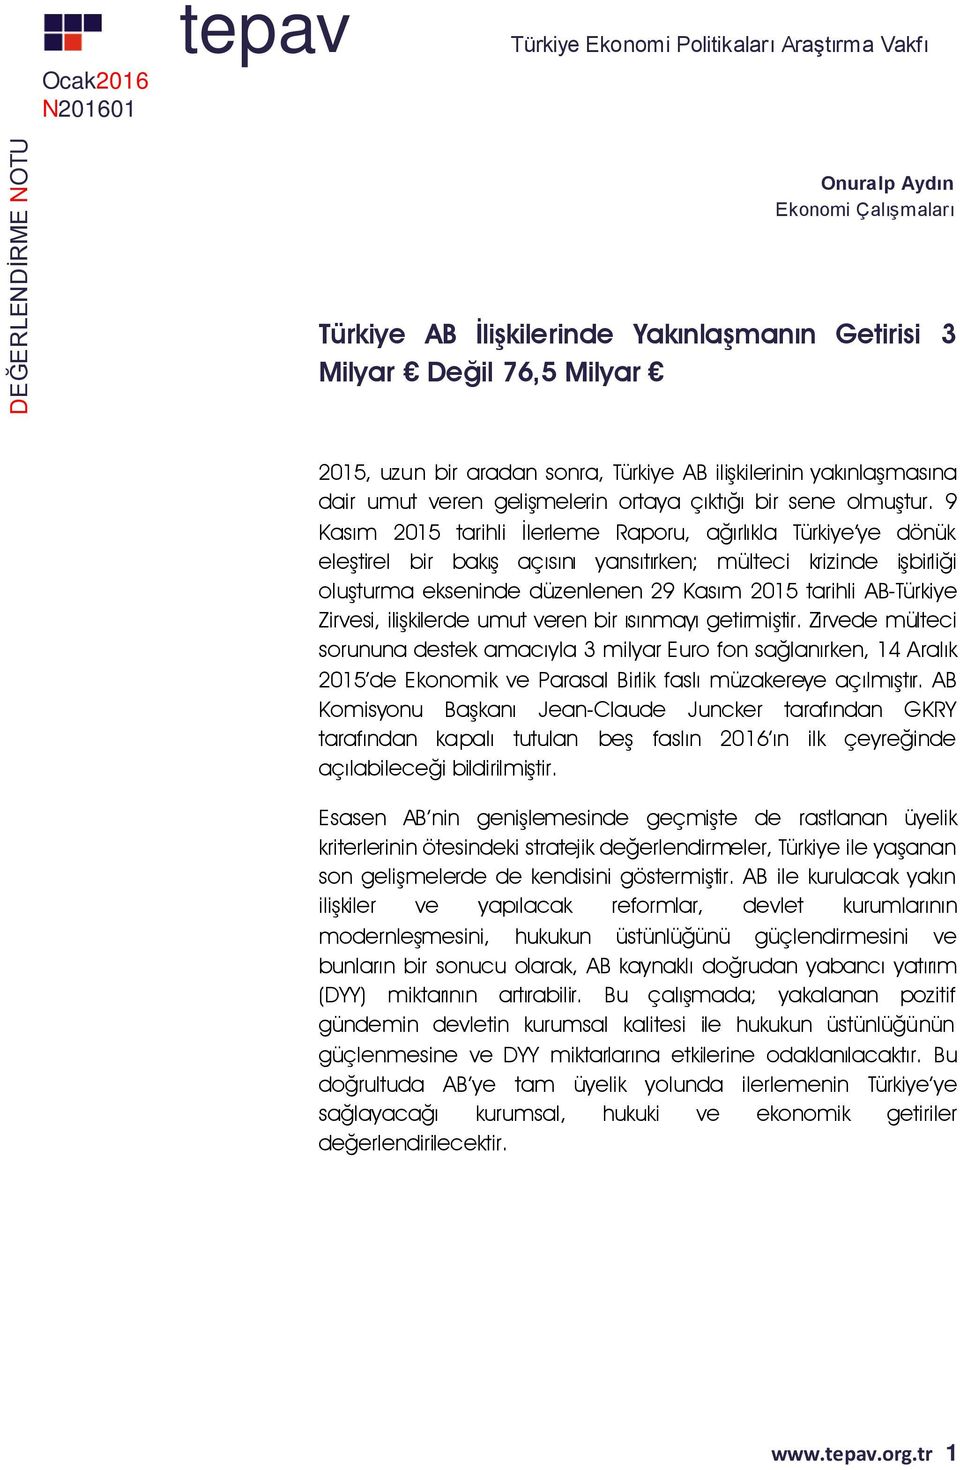 9 Kasım 2015 tarihli İlerleme Raporu, ağırlıkla Türkiye ye dönük eleştirel bir bakış açısını yansıtırken; mülteci krizinde işbirliği oluşturma ekseninde düzenlenen 29 Kasım 2015 tarihli AB-Türkiye